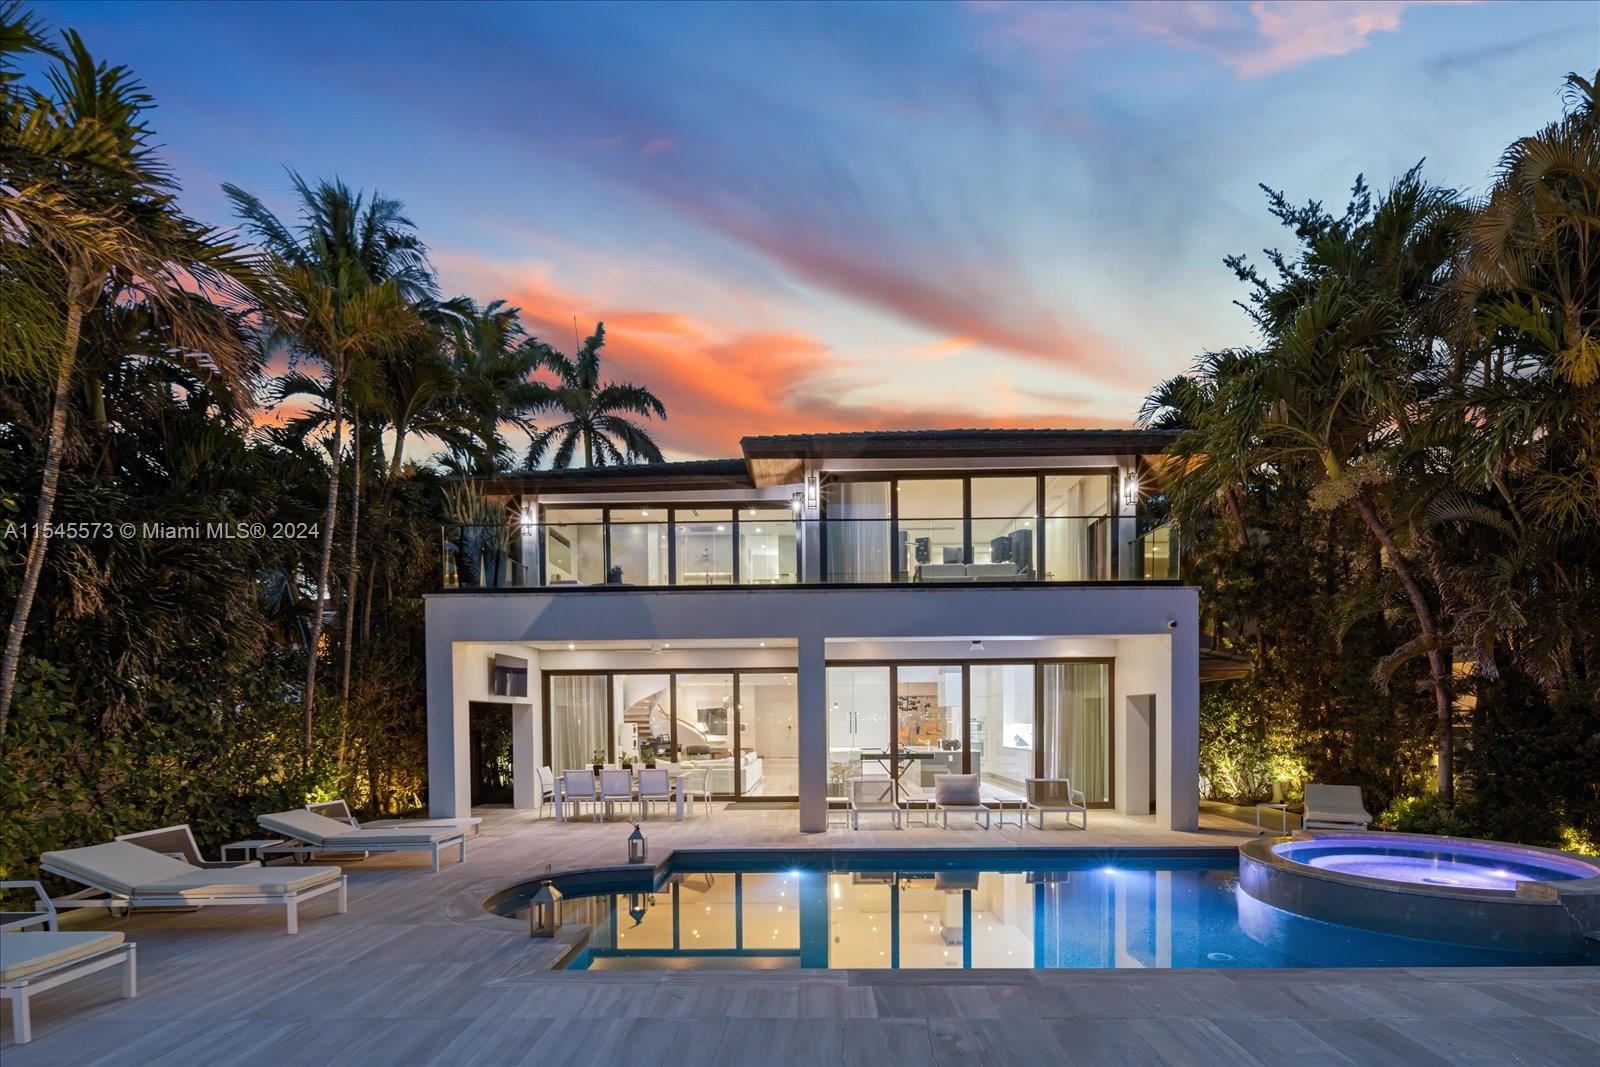 Property for Sale at 401 E Rivo Alto Dr, Miami Beach, Miami-Dade County, Florida - Bedrooms: 8 
Bathrooms: 8  - $21,000,000